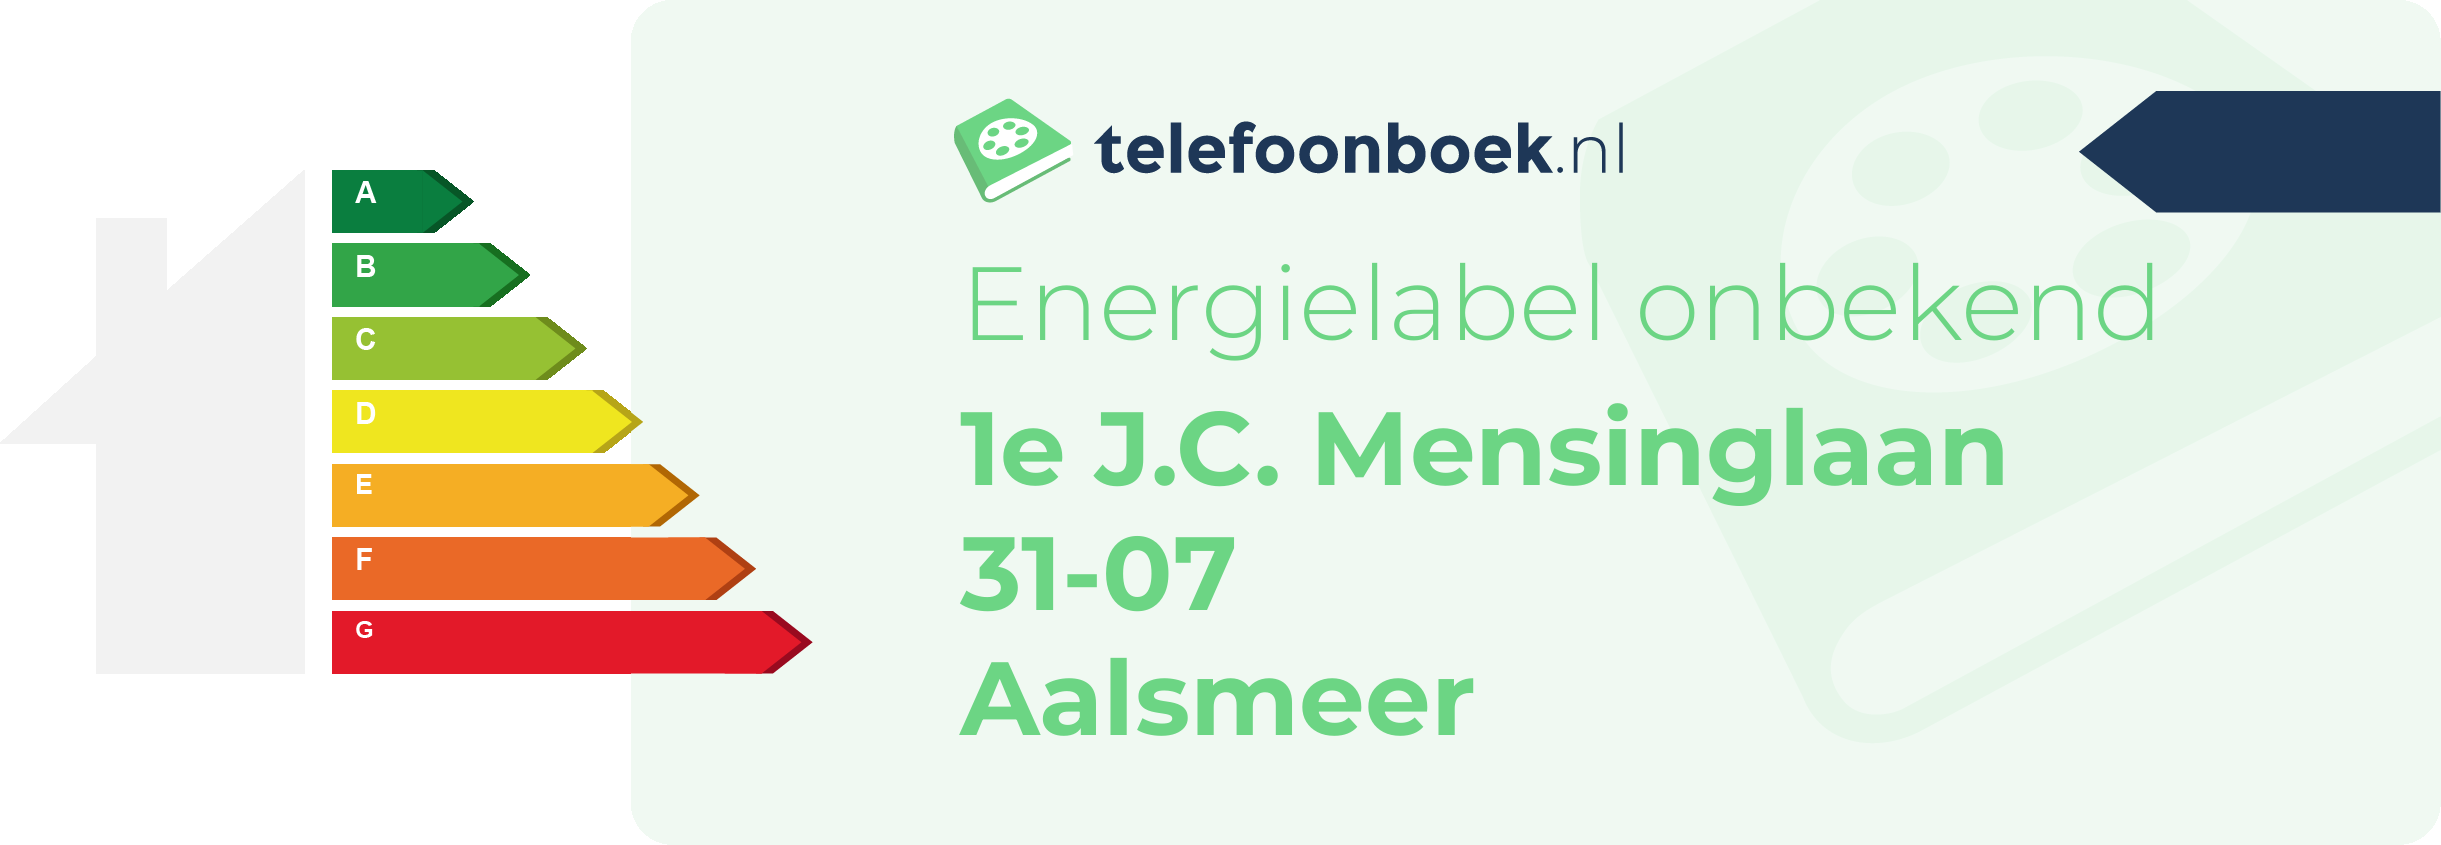 Energielabel 1e J.C. Mensinglaan 31-07 Aalsmeer